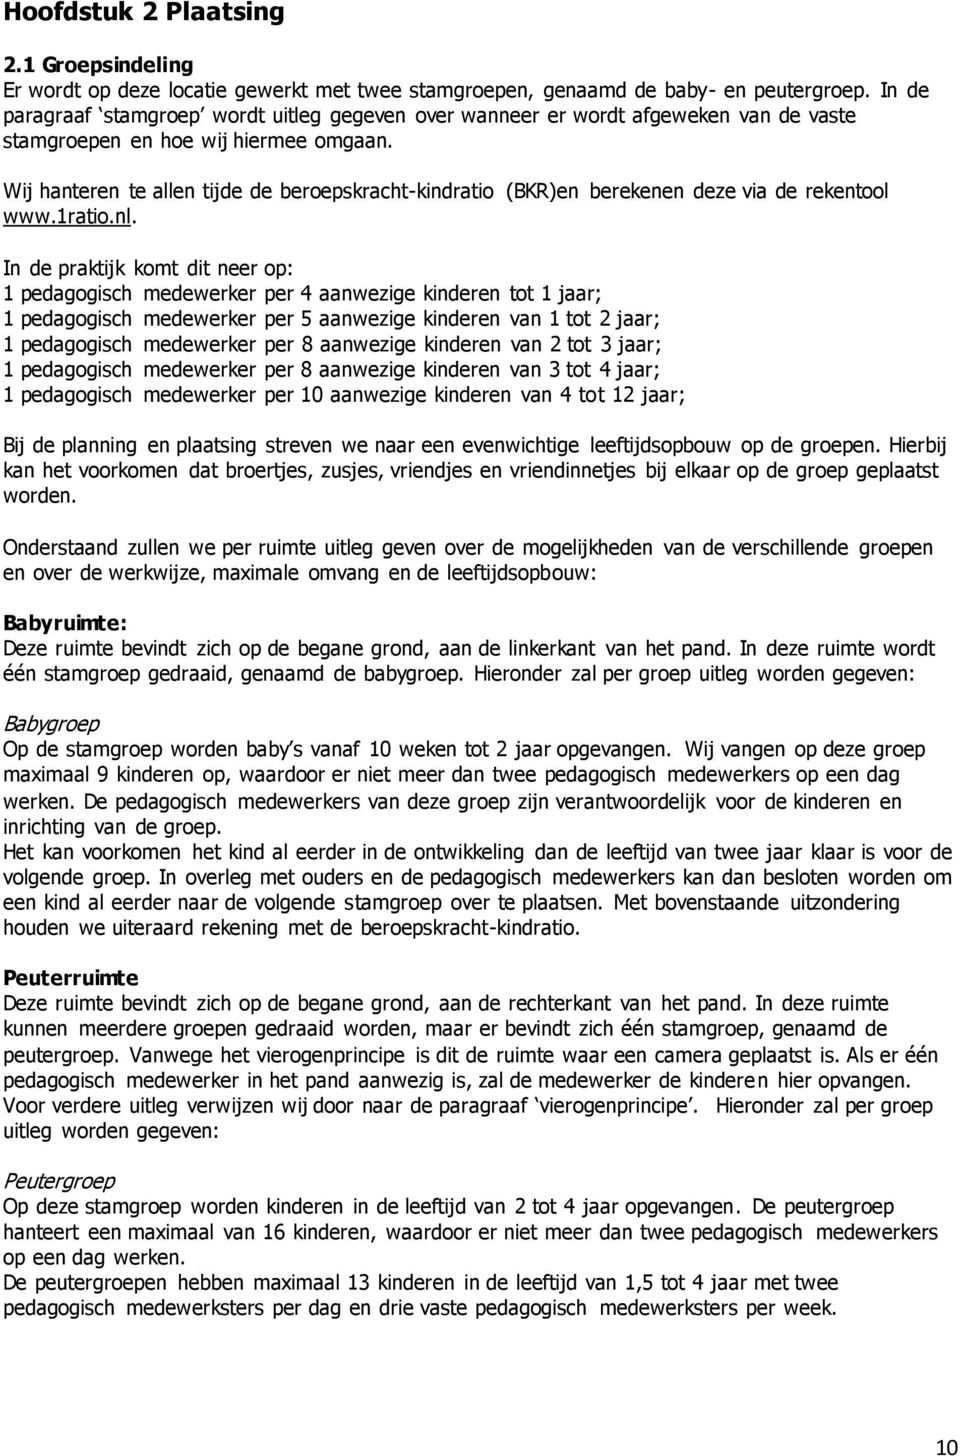 Wij hanteren te allen tijde de beroepskracht-kindratio (BKR)en berekenen deze via de rekentool www.1ratio.nl.